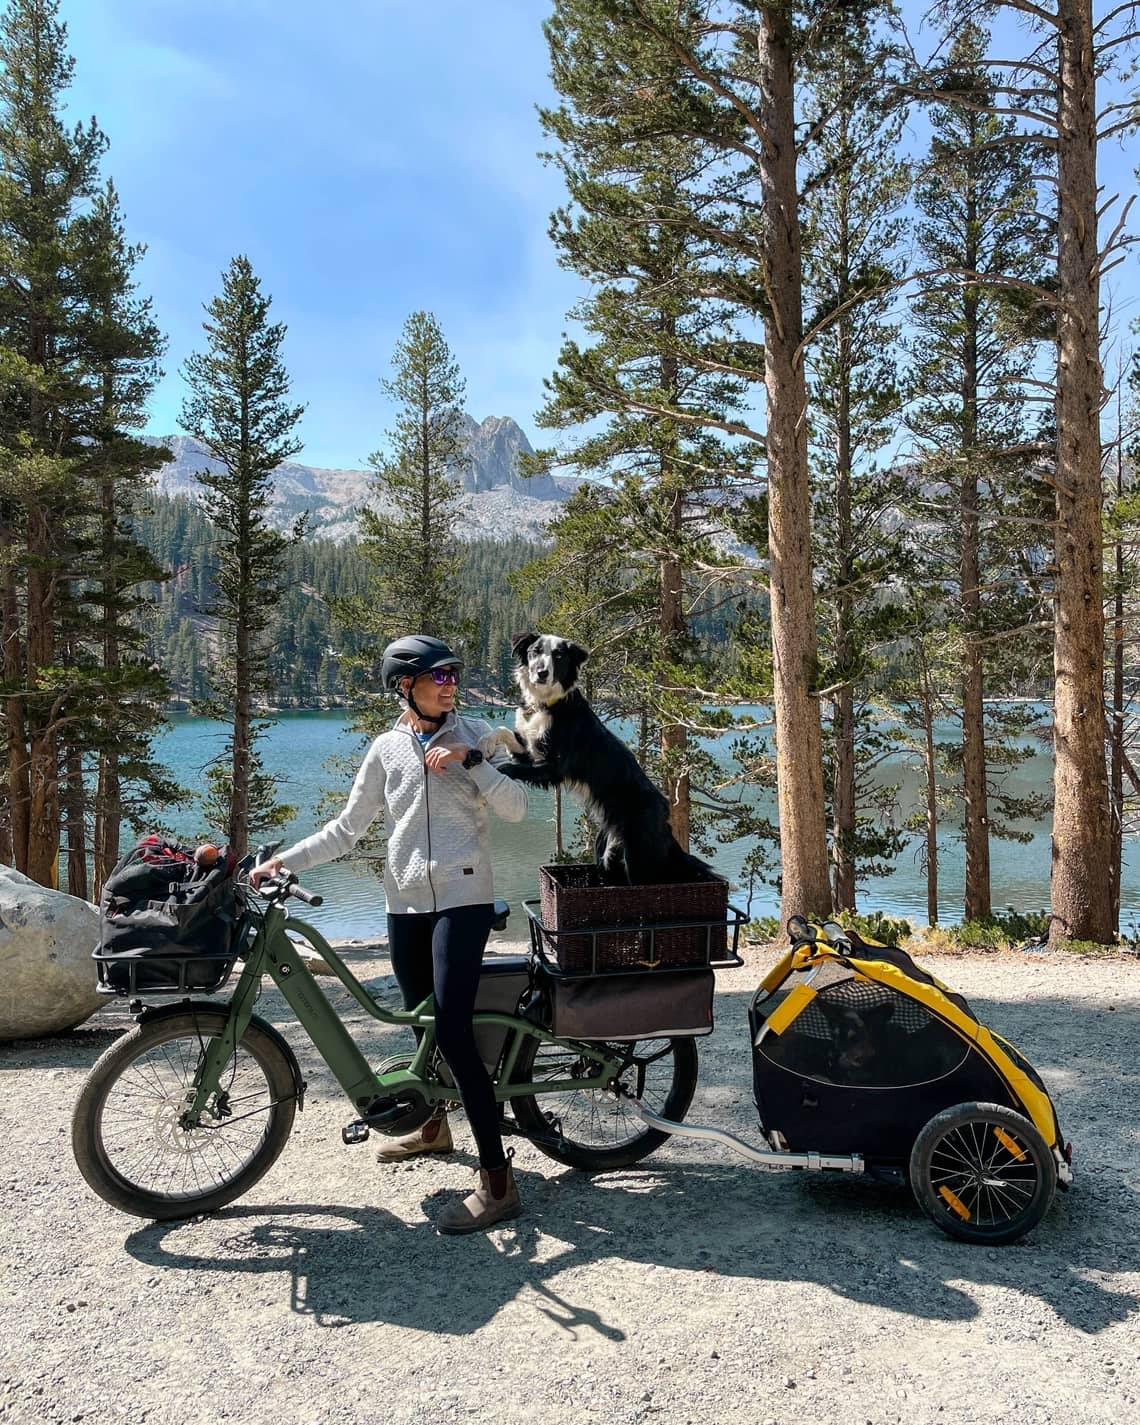 Bike with dog, cargo bike